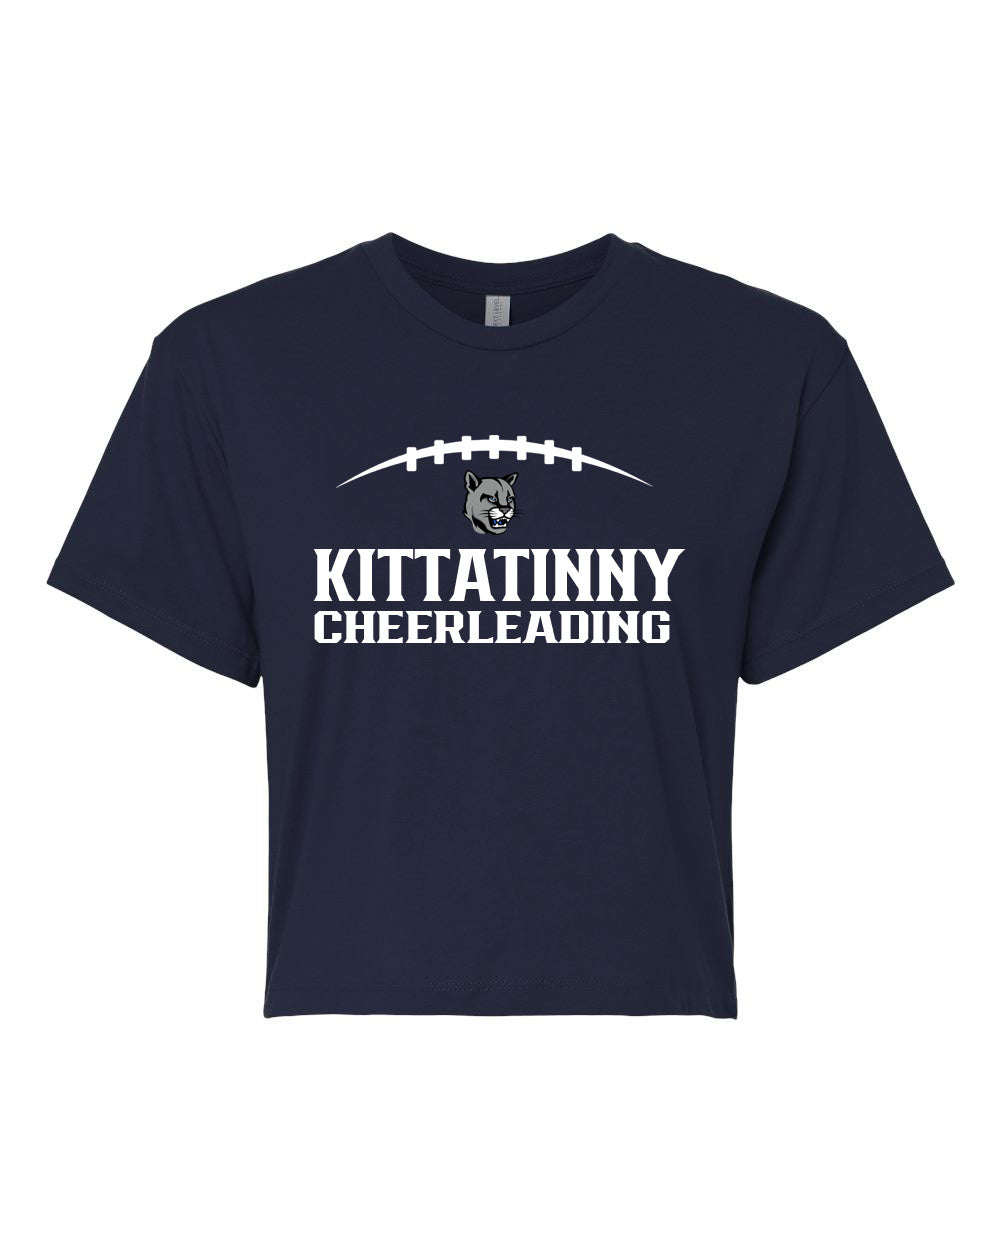 Kittatinny Cheer Design 7 Crop Top